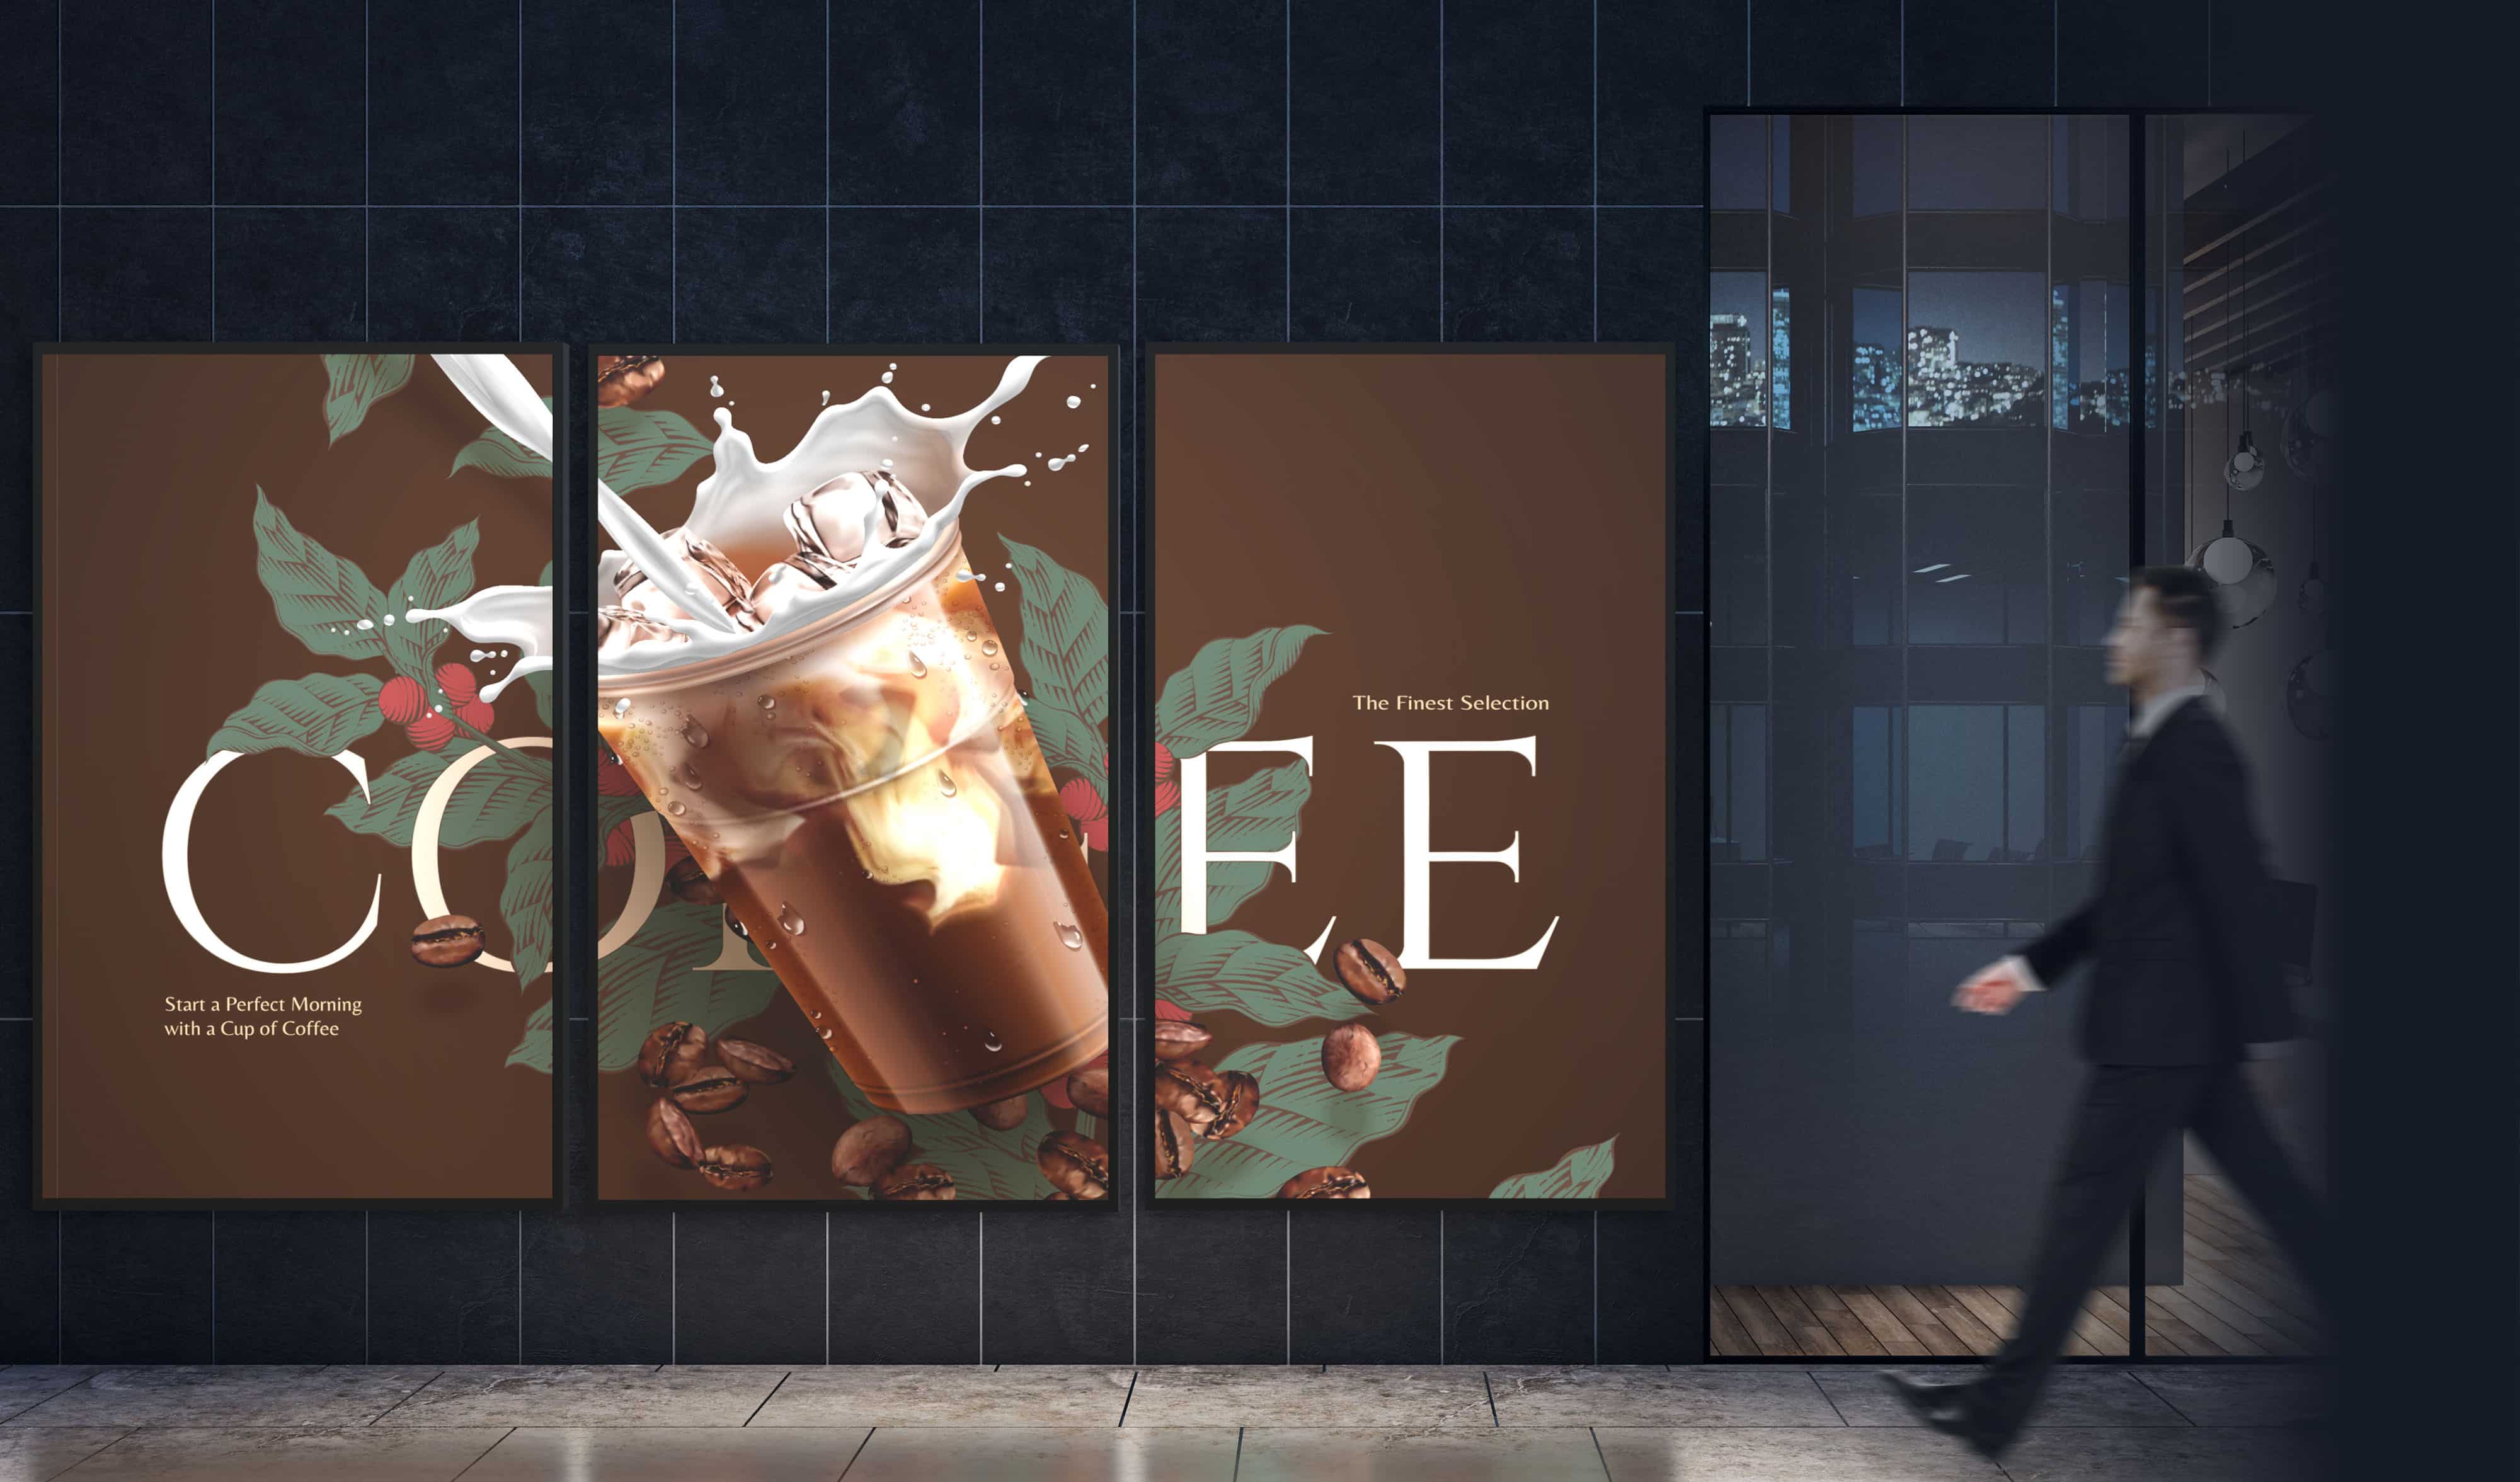 Una persona pasa por delante de una señalización digital compuesta por tres pantallas Serie N que muestran un único anuncio de una bebida de café en las tres pantallas.